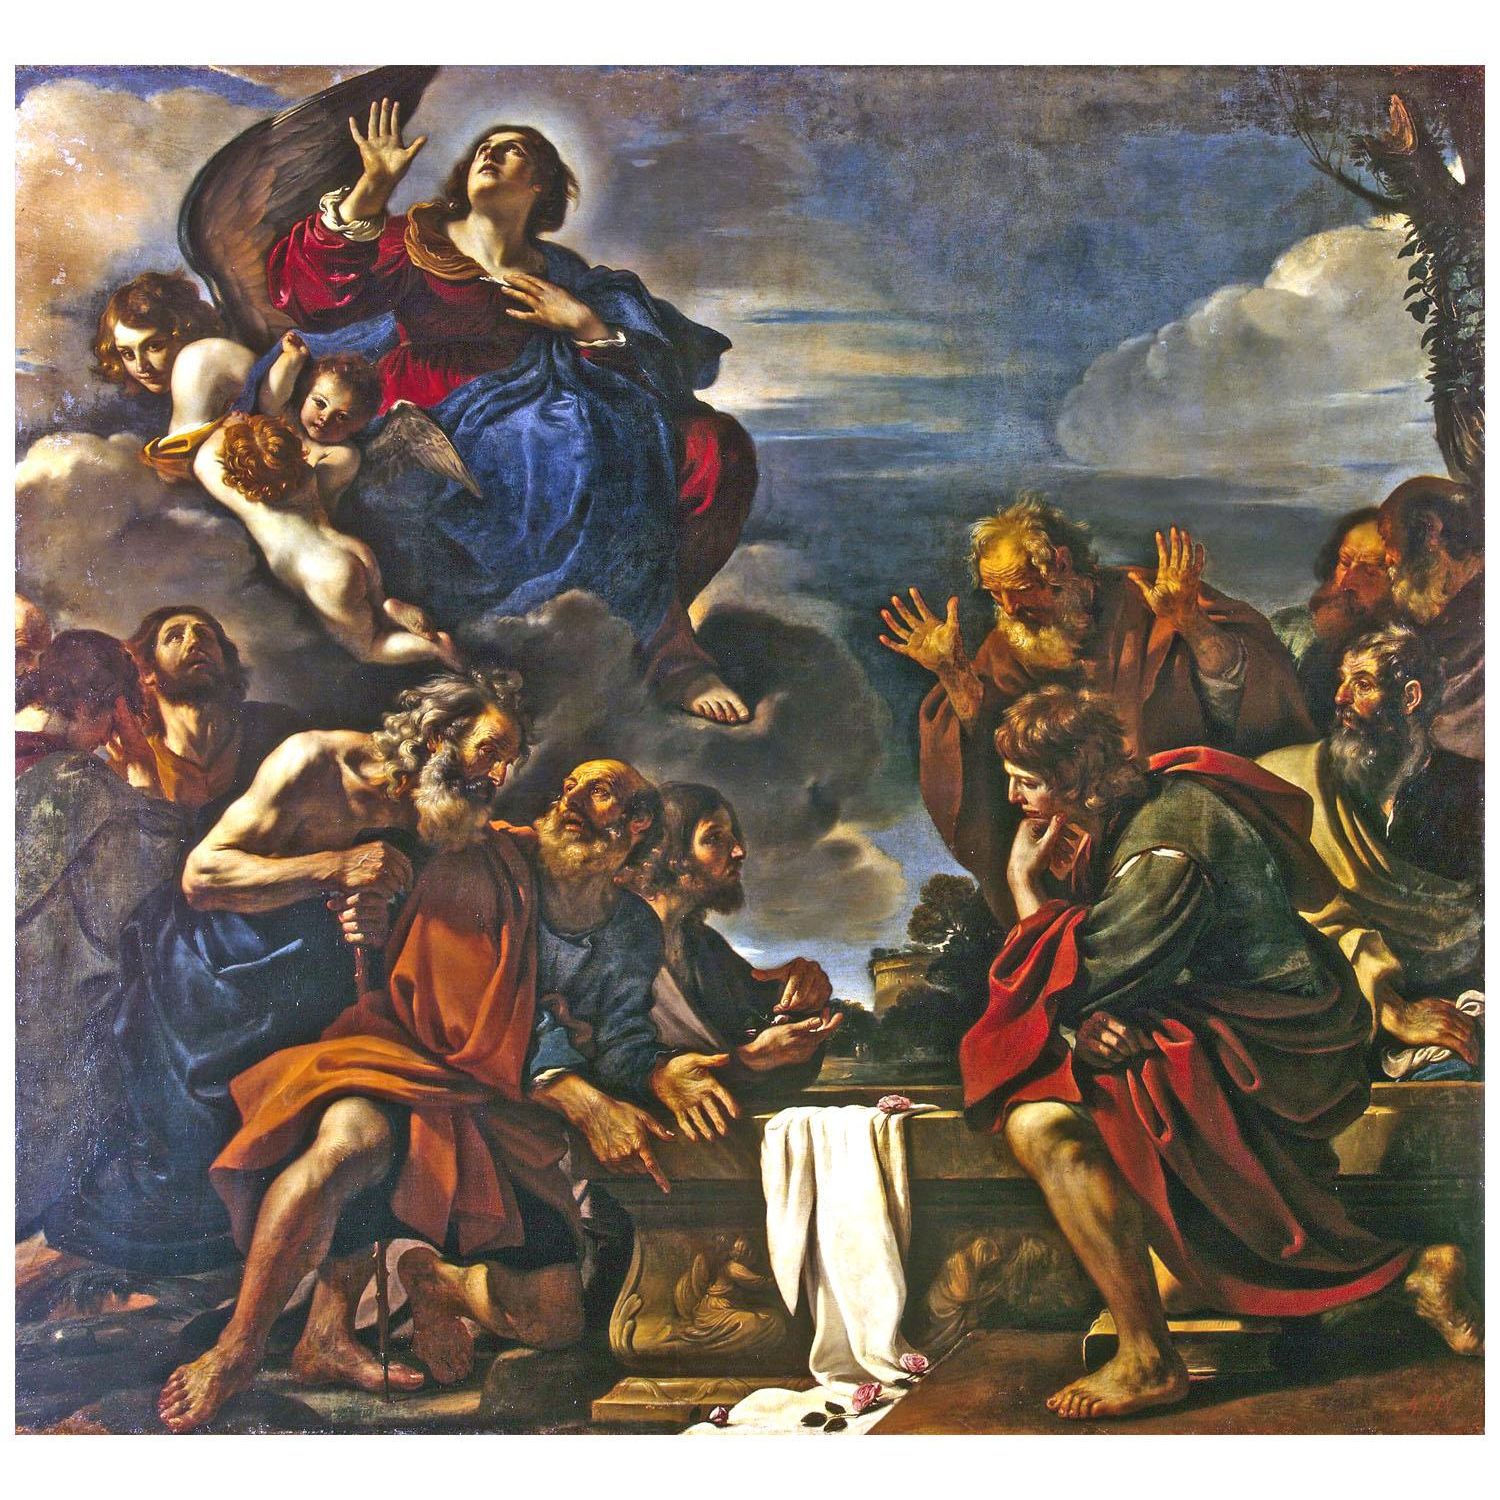 Guercino. Assunzione della Vergine. 1623. Hermitage Museum